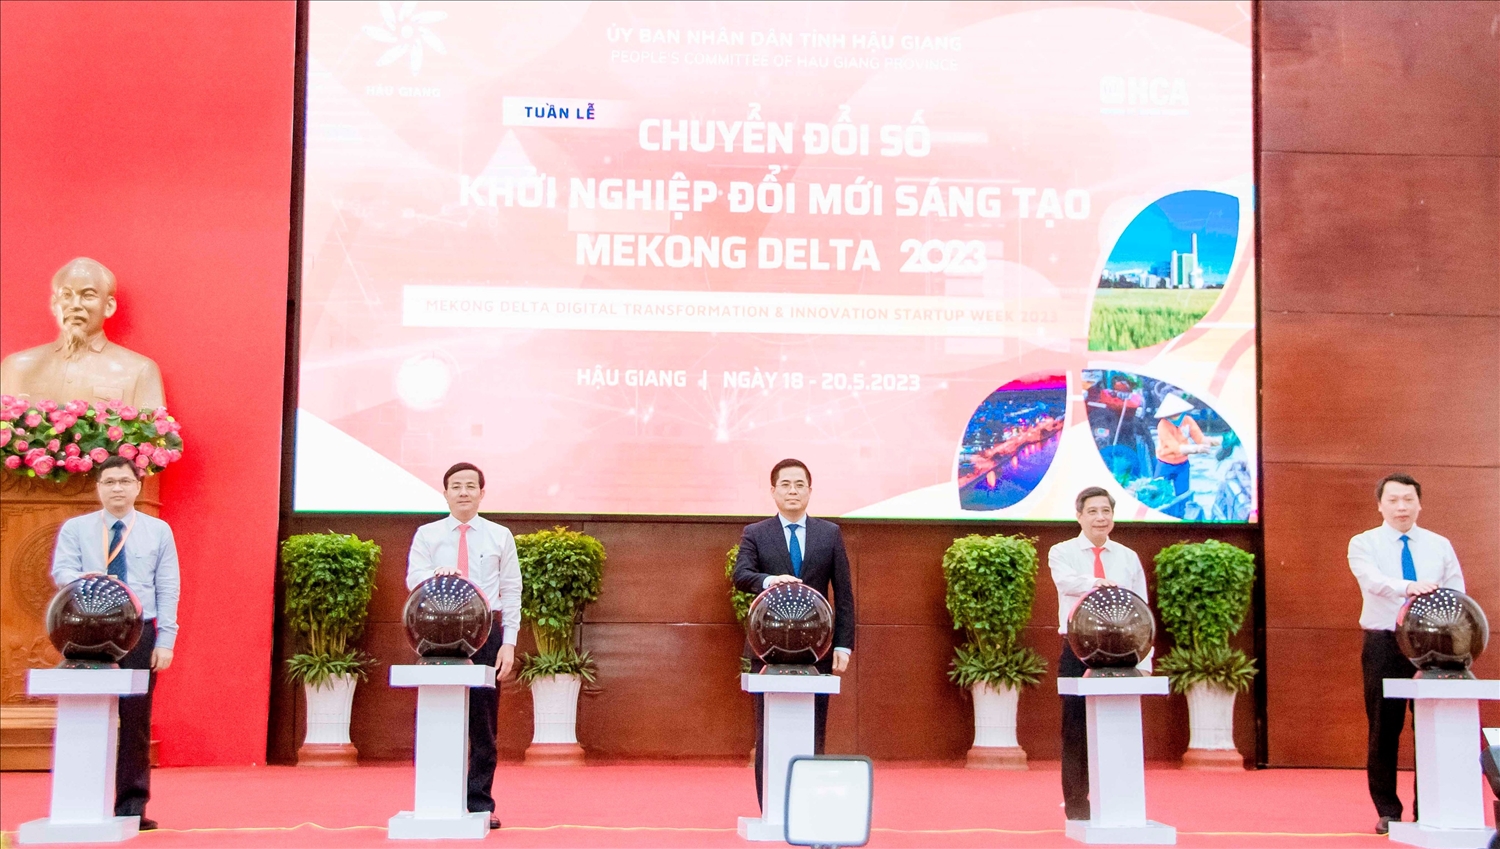 Lãnh đạo Bộ Thông tin và Truyền thông, Bộ Khoa học và Công nghệ và lãnh đạo Tỉnh ủy, UBND tỉnh Hậu Giang thực hiện nghi thức khai mạc Tuần lễ Chuyển đổi số và Khởi nghiệp đổi mới sáng tạo - Mekong Delta 2023